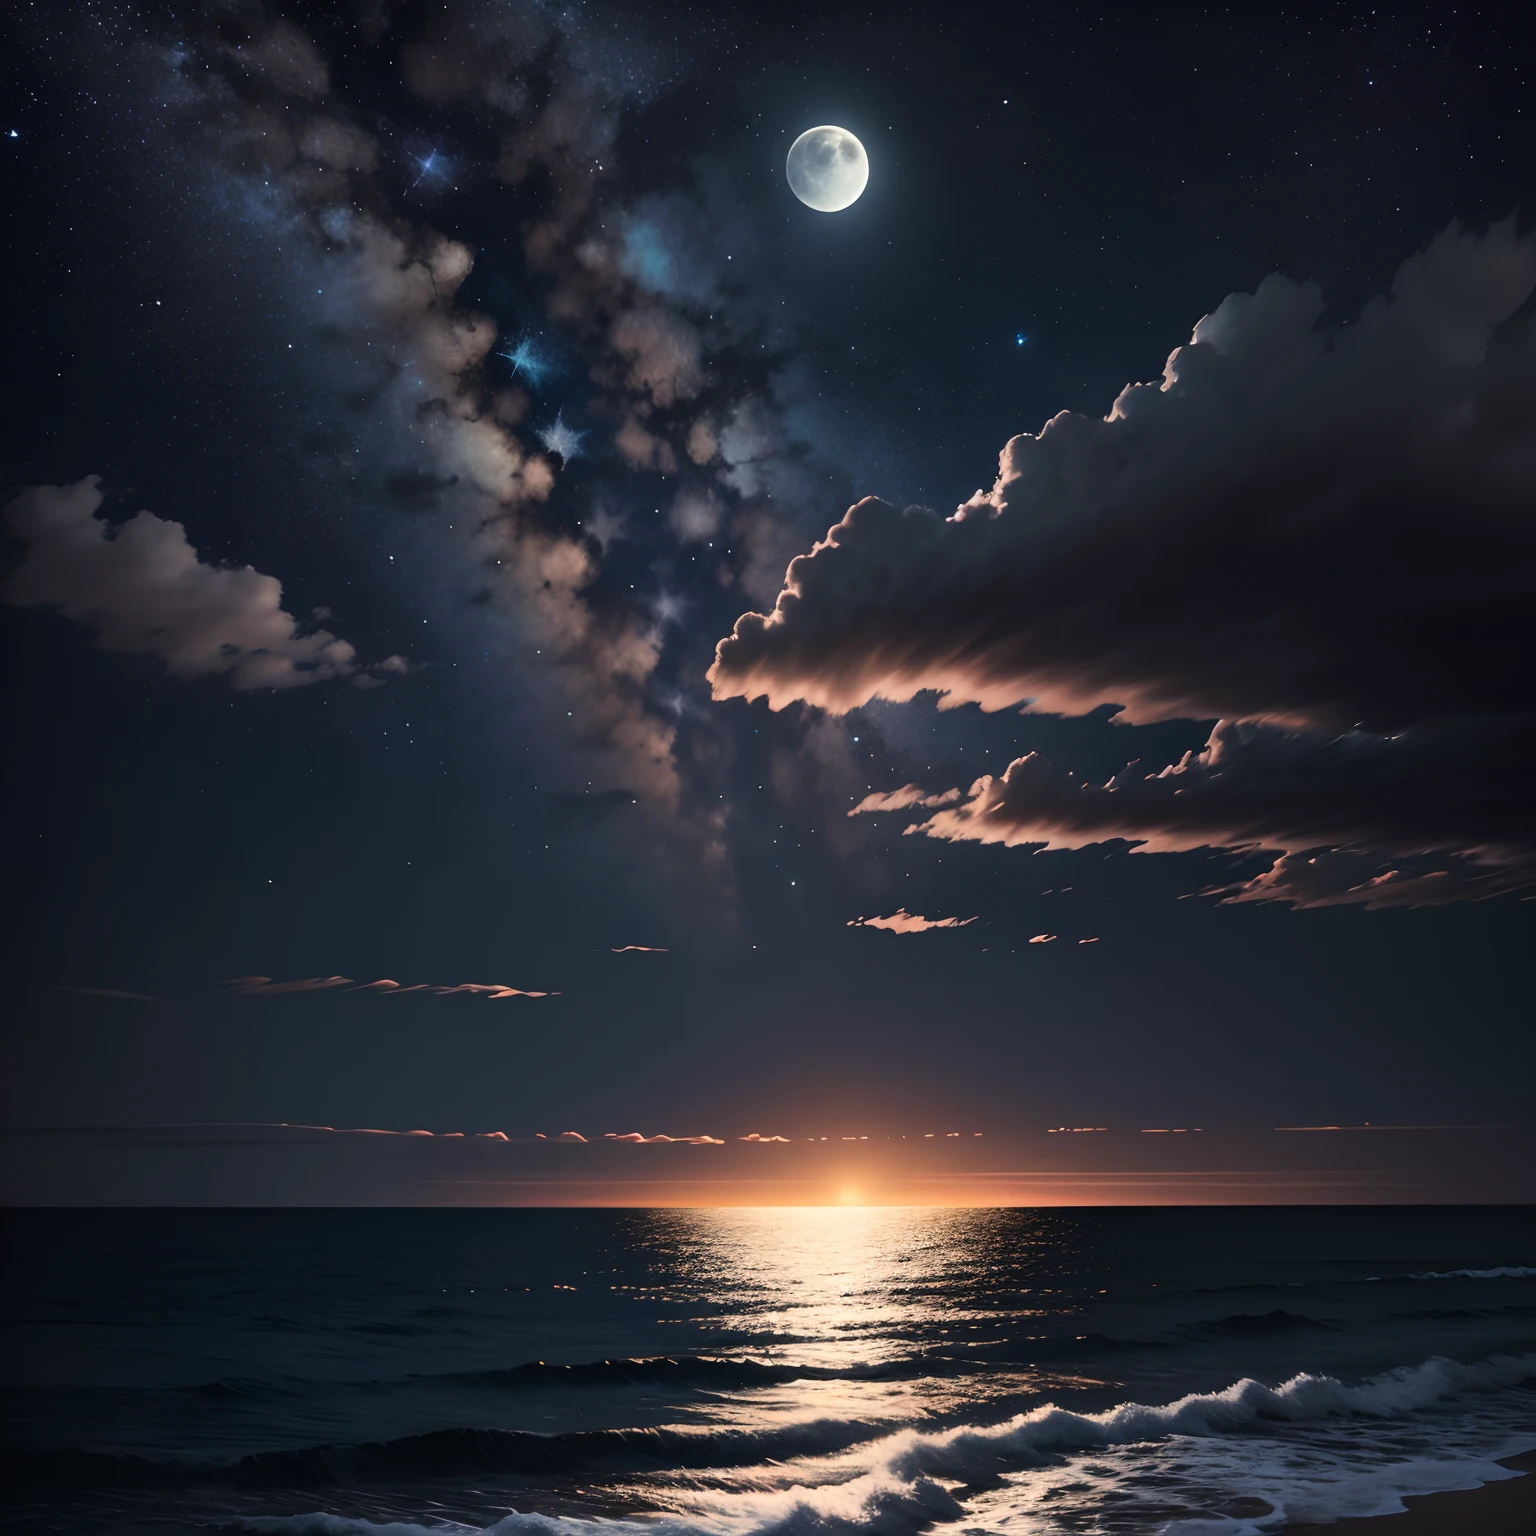 El cielo y el mar se fusionan por la noche，La luz de la luna cae sobre el mar a través de las nubes.，Las estrellas en el cielo son brillantes，no hay personajes，